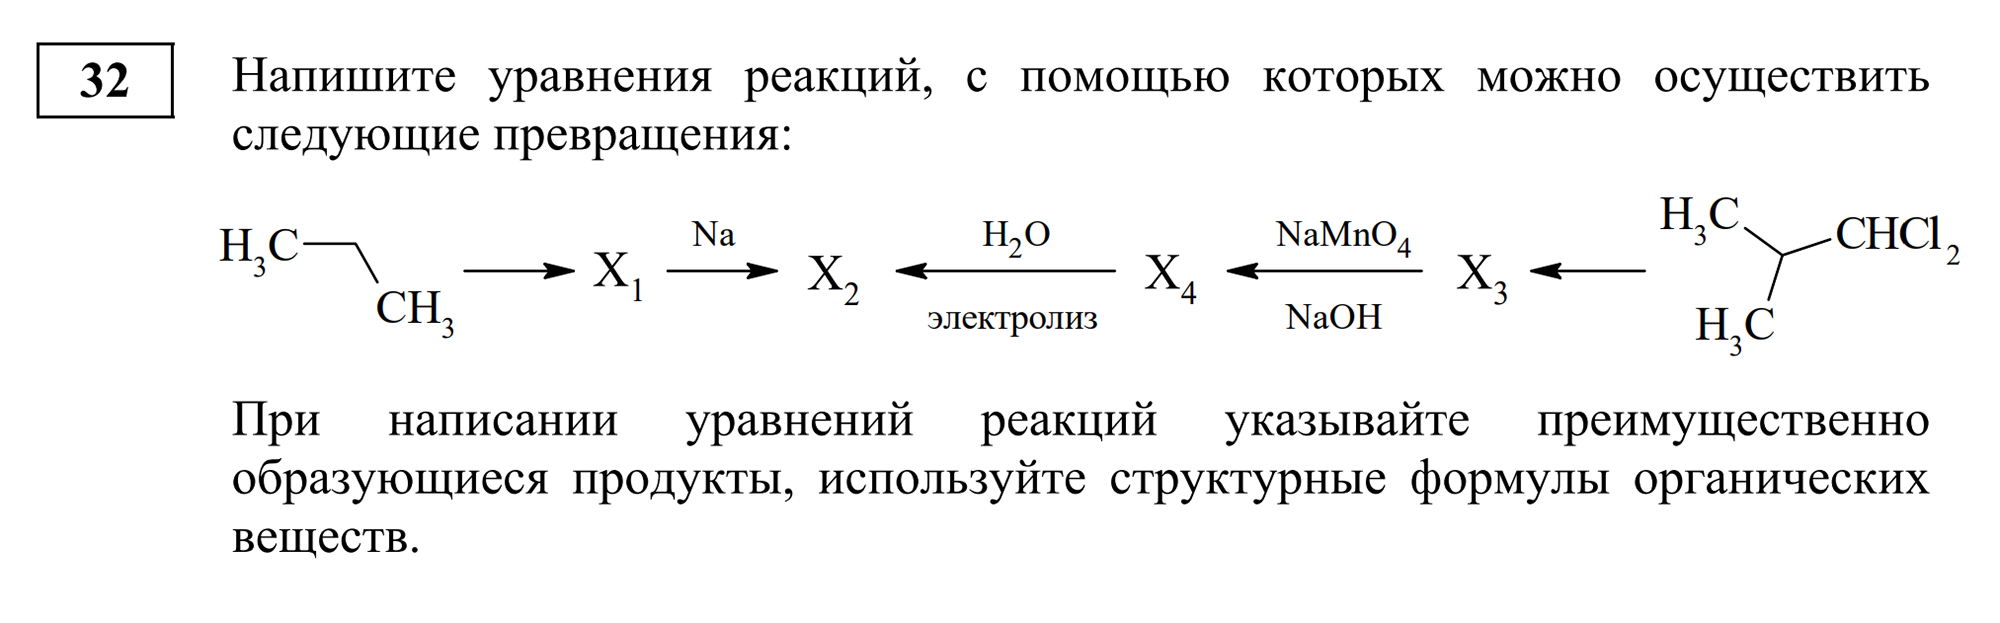 Задание из второй части, где нужно составить уравнение. Источник: fipi.ru